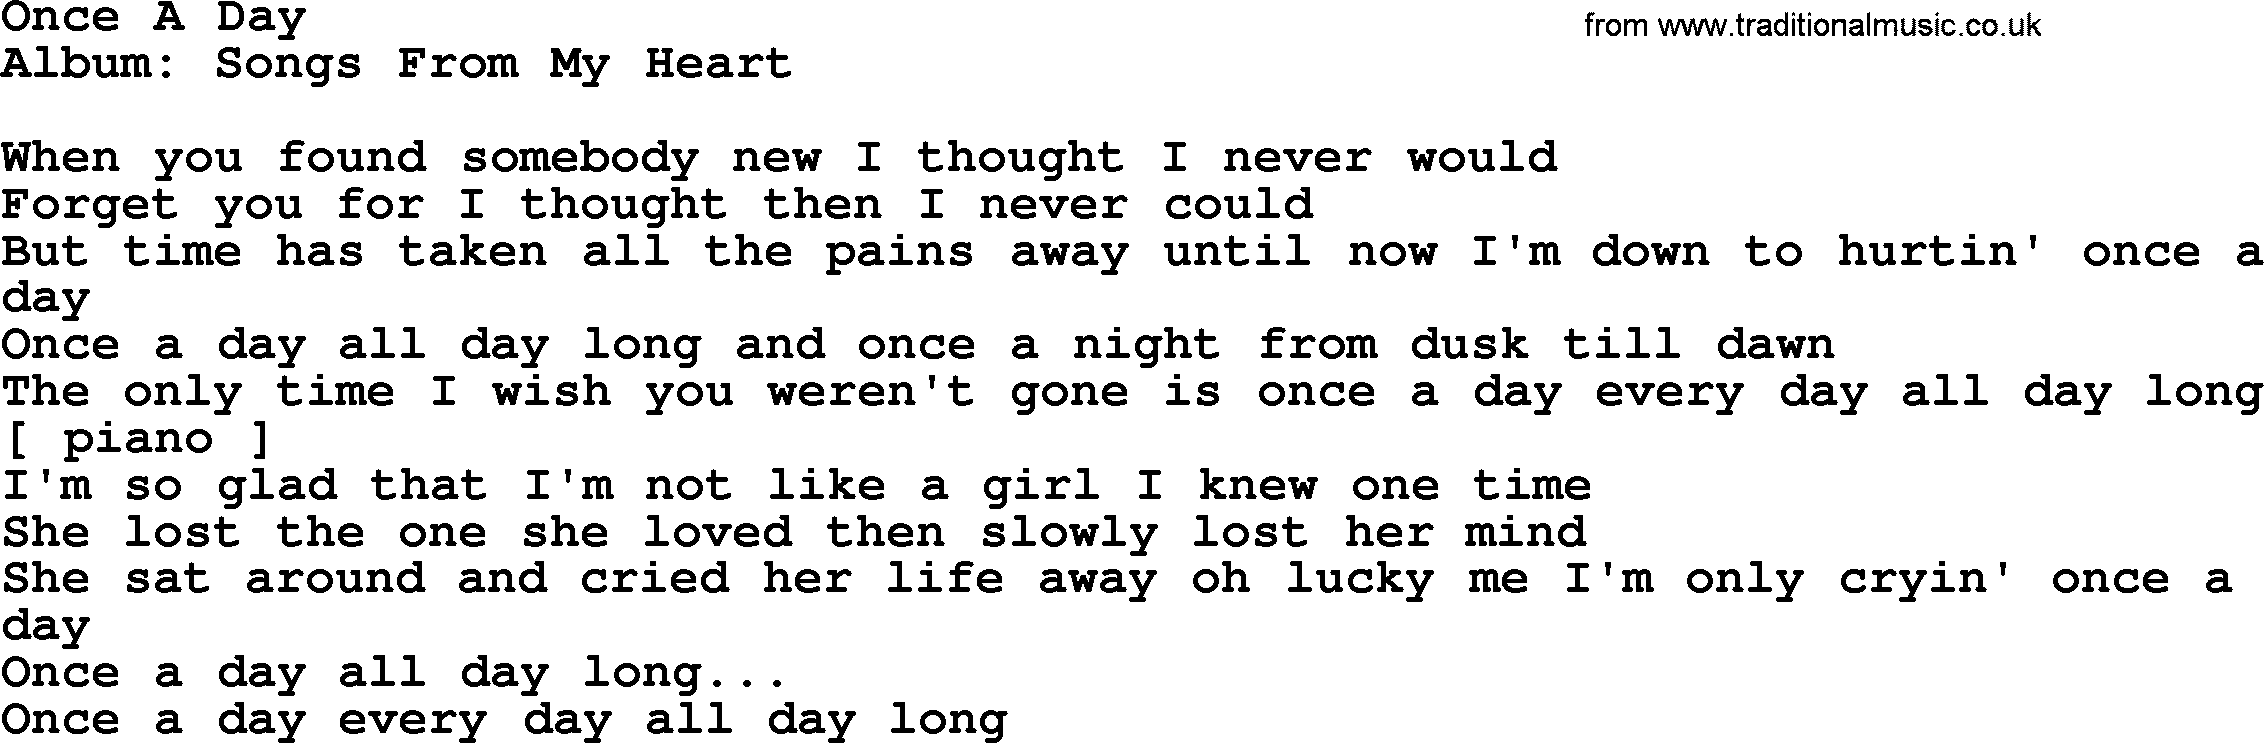 Loretta Lynn song: Once A Day lyrics